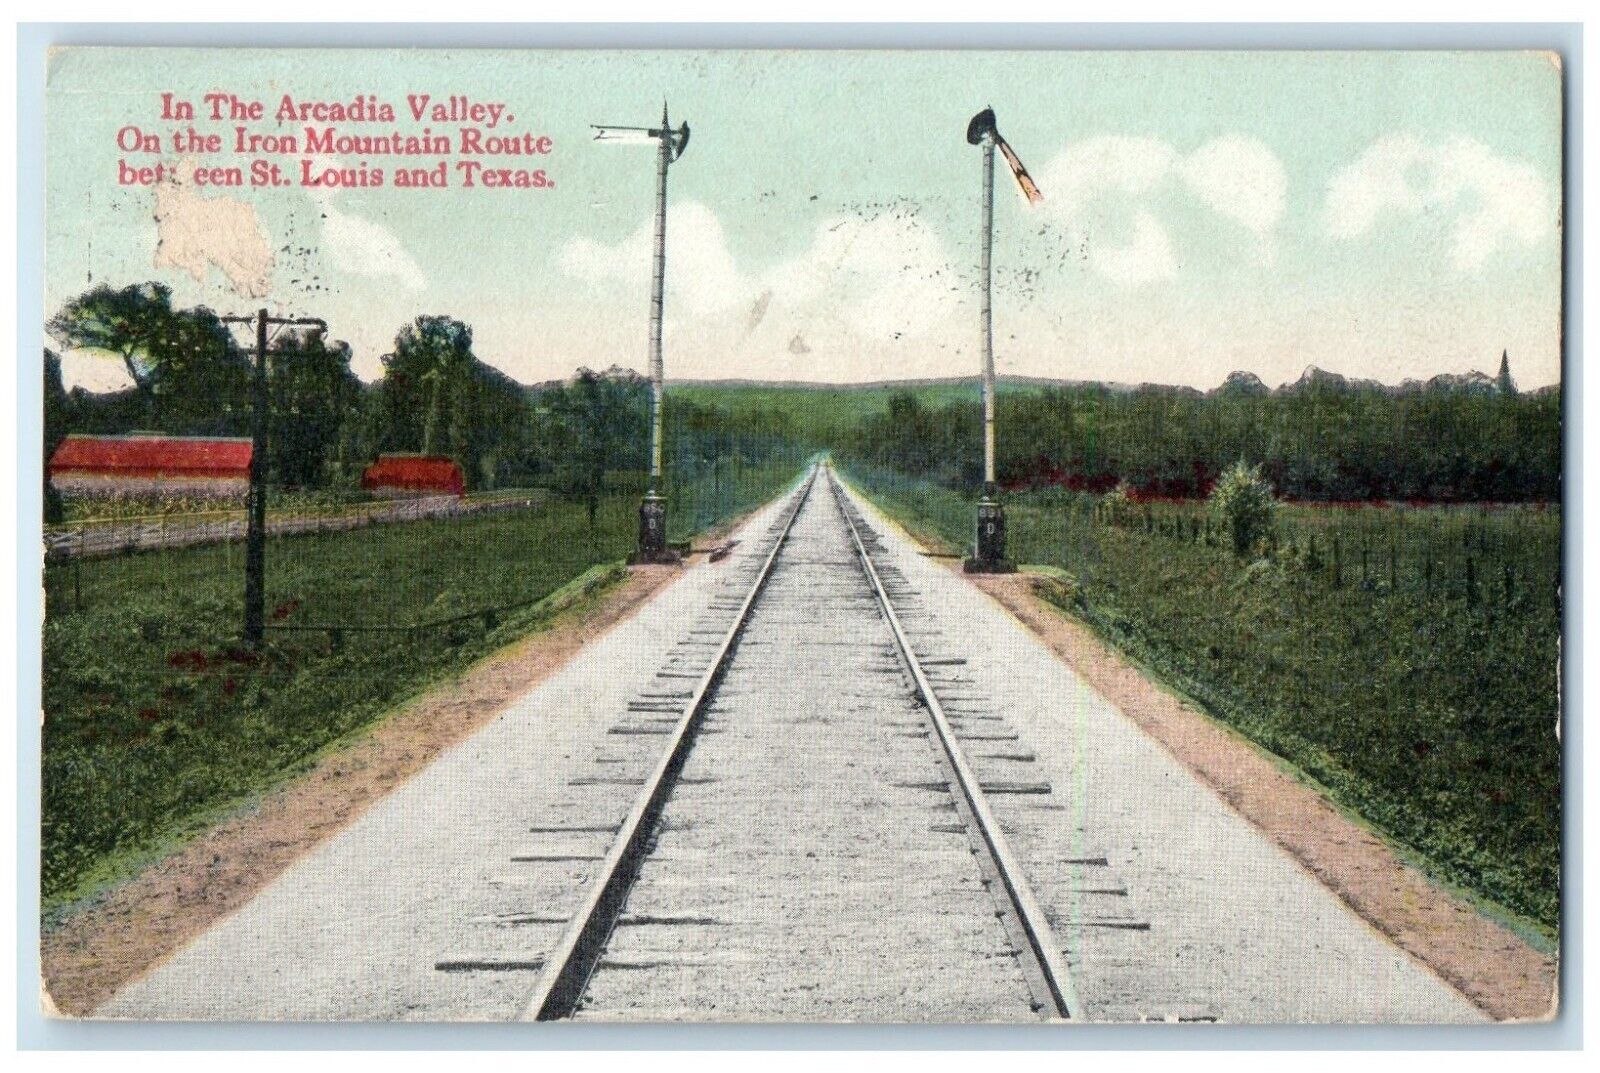 1914 Arcadia Valley Iron Mountain Route Between St. Louis Texas Vintage Postcard